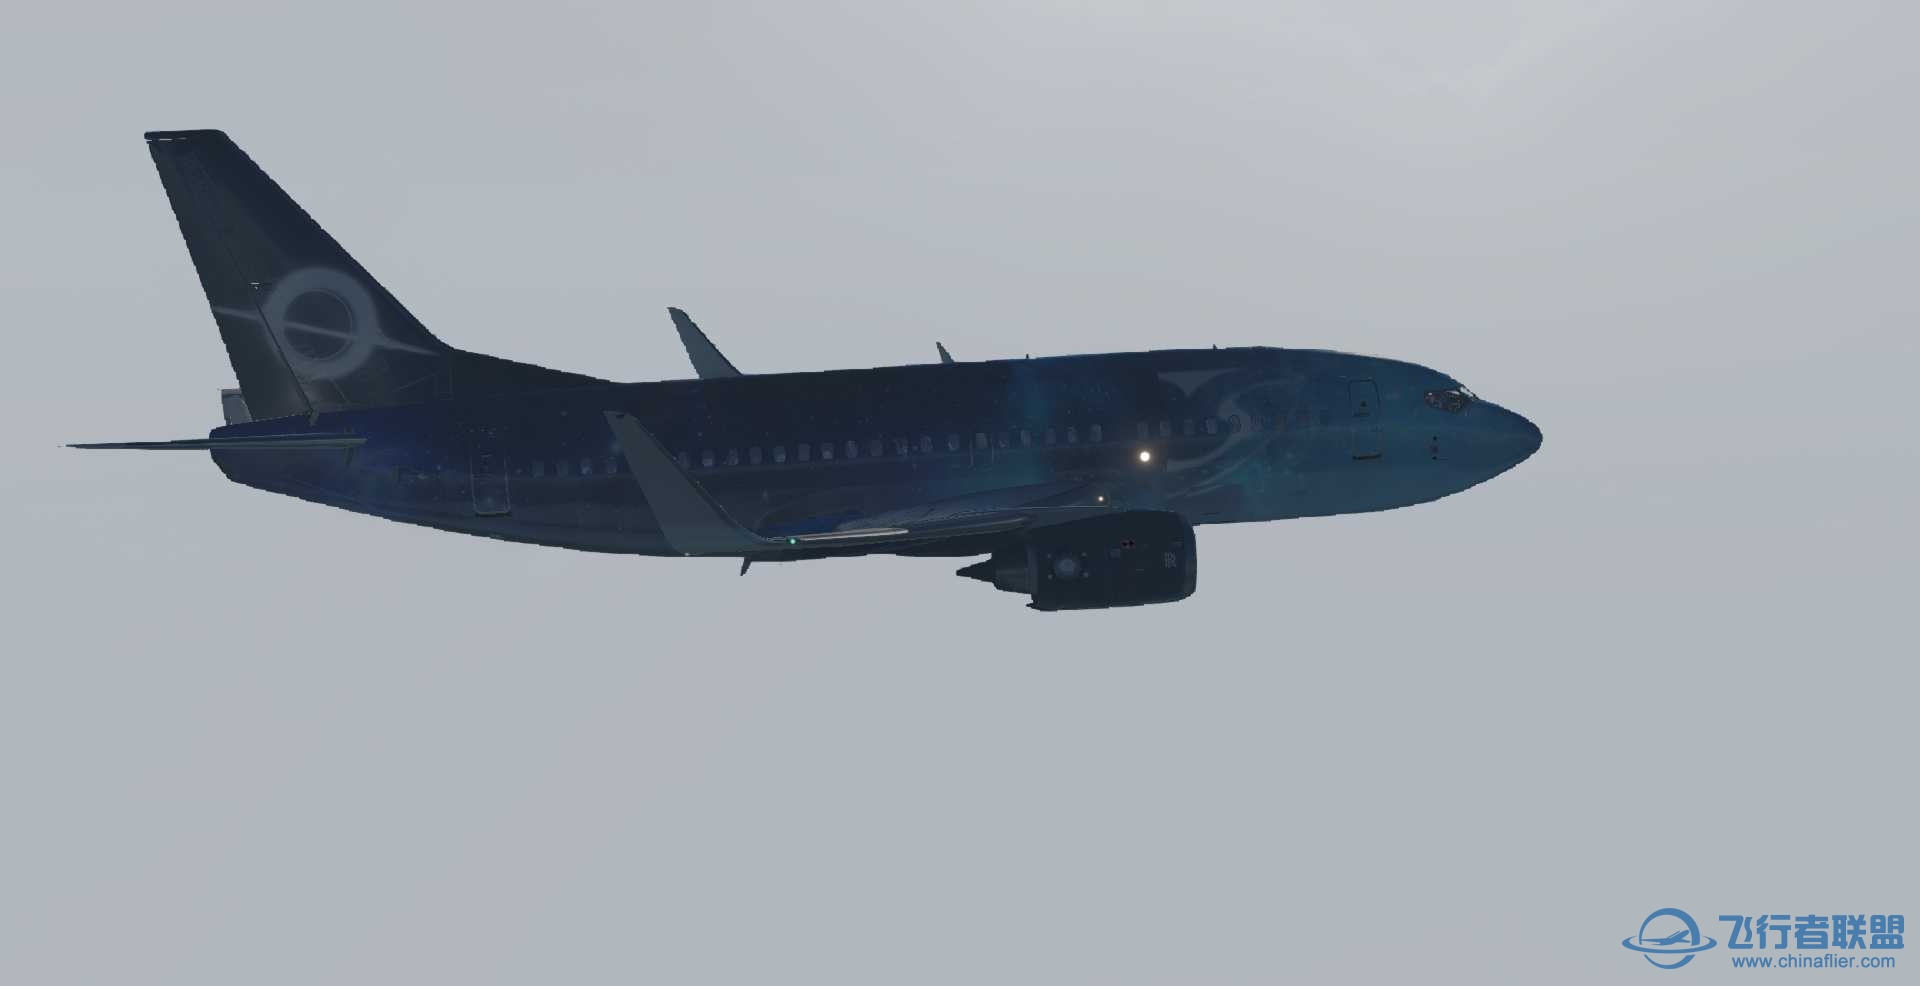 波音737-500 星空彩绘机 ZSPD-ZBAD航线美图-4064 